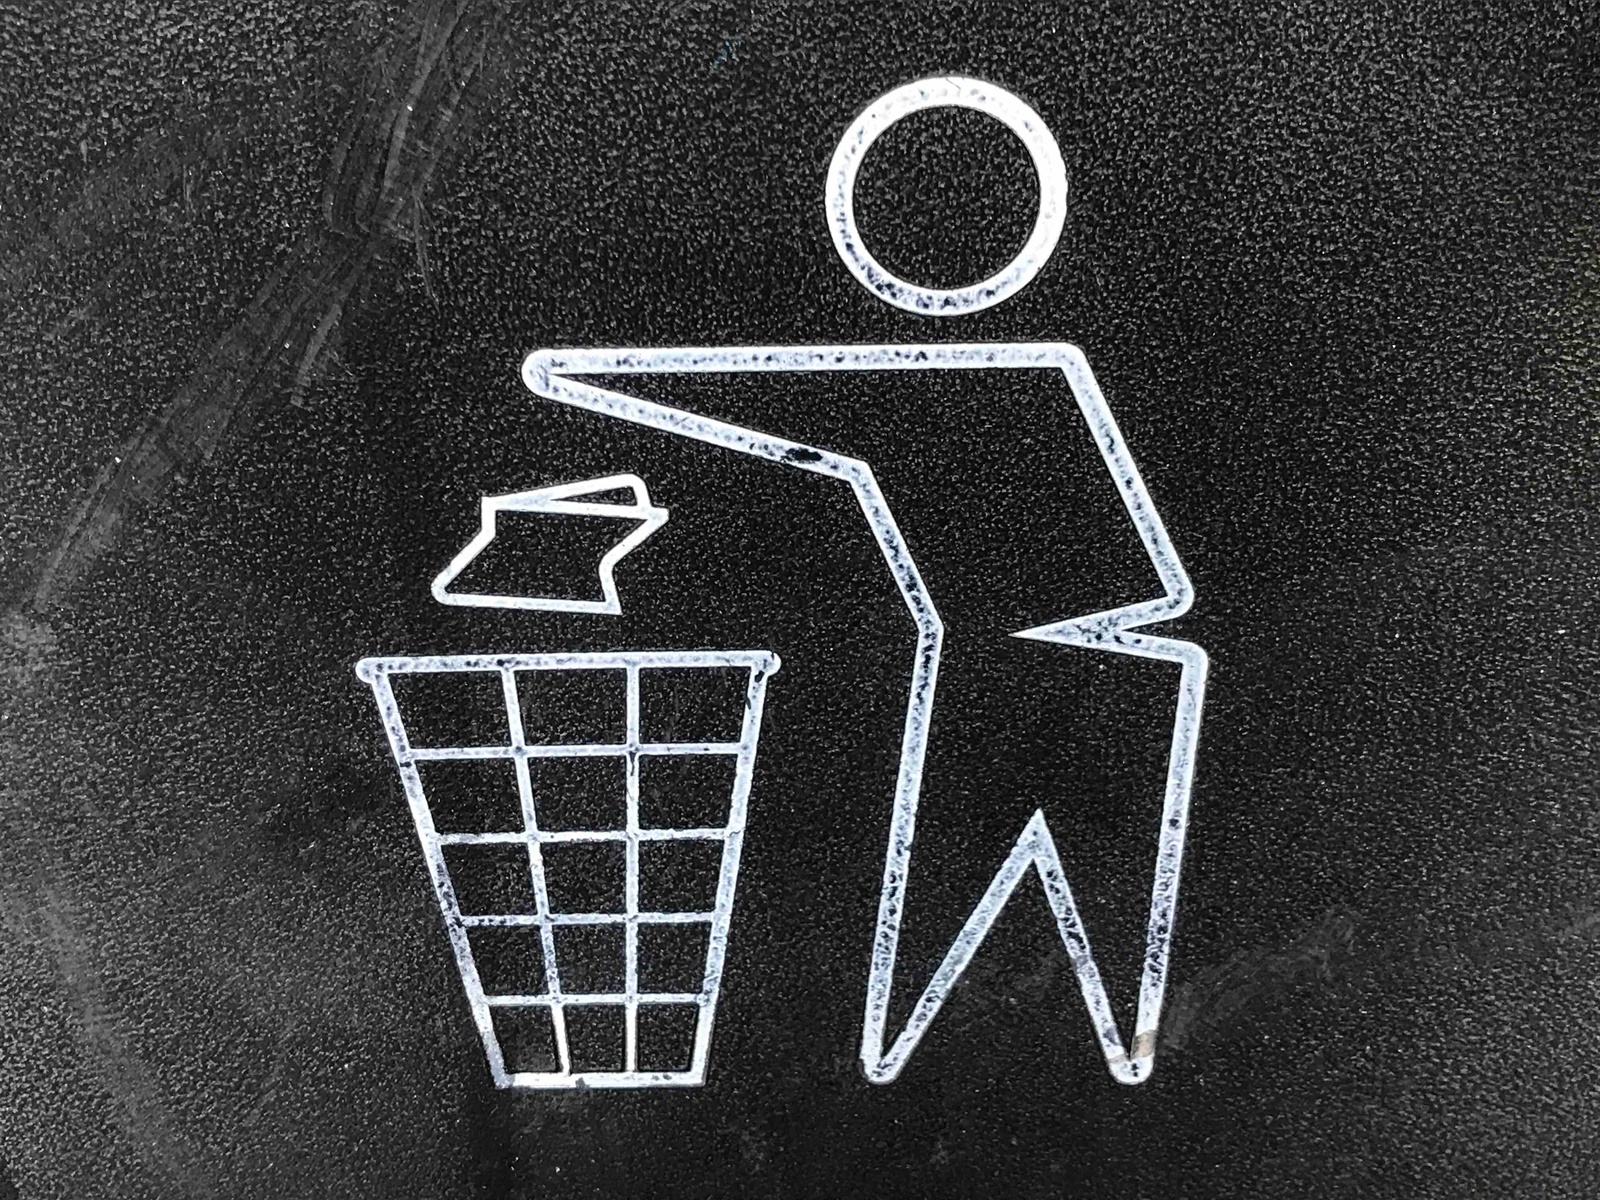 Σκουπίδια – δήμος Θεσσαλονίκης: Συνεχίζουν την αποχή οι εργαζόμενοι στην καθαριότητα